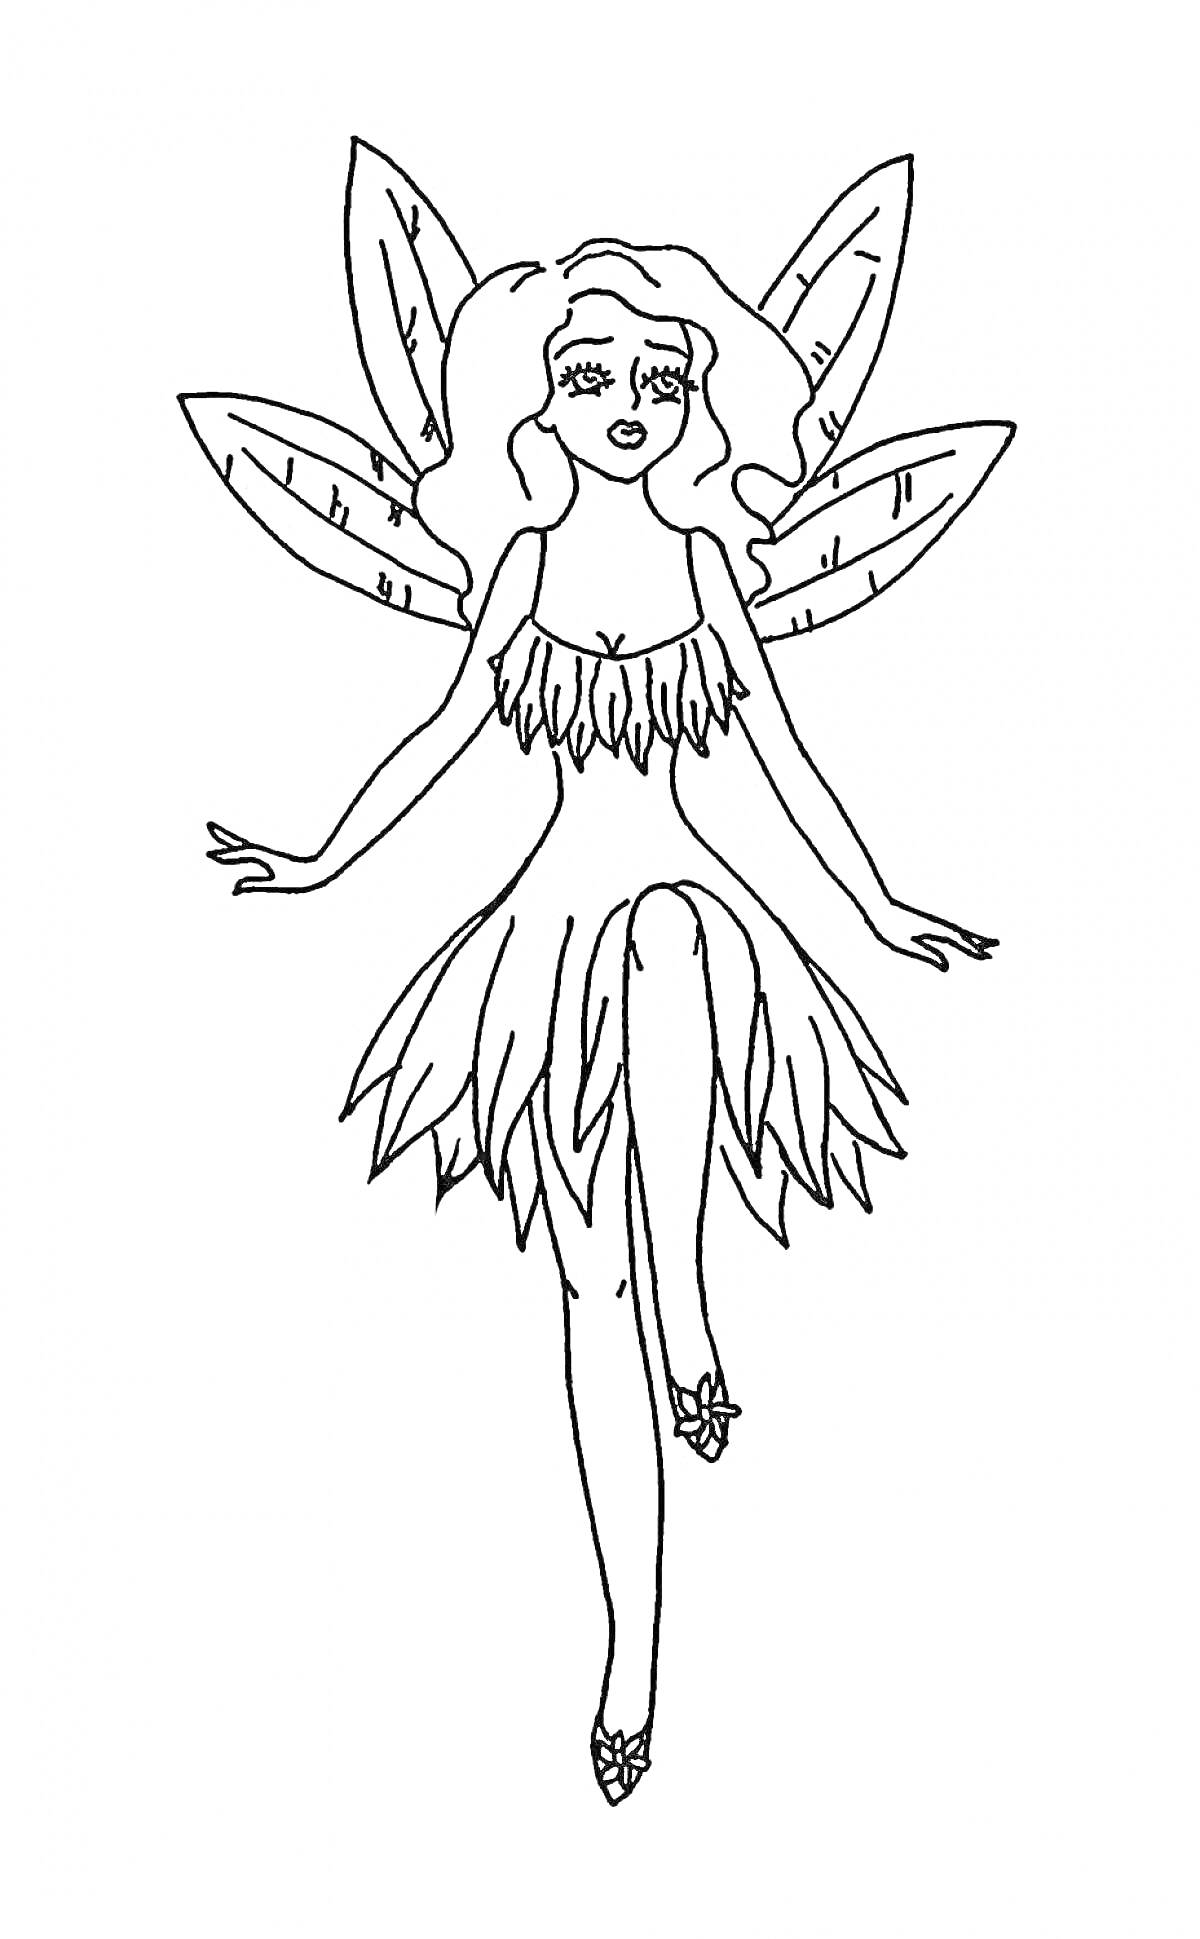 Раскраска Фея с длинными волосами в платье из лепестков с крыльями из листьев